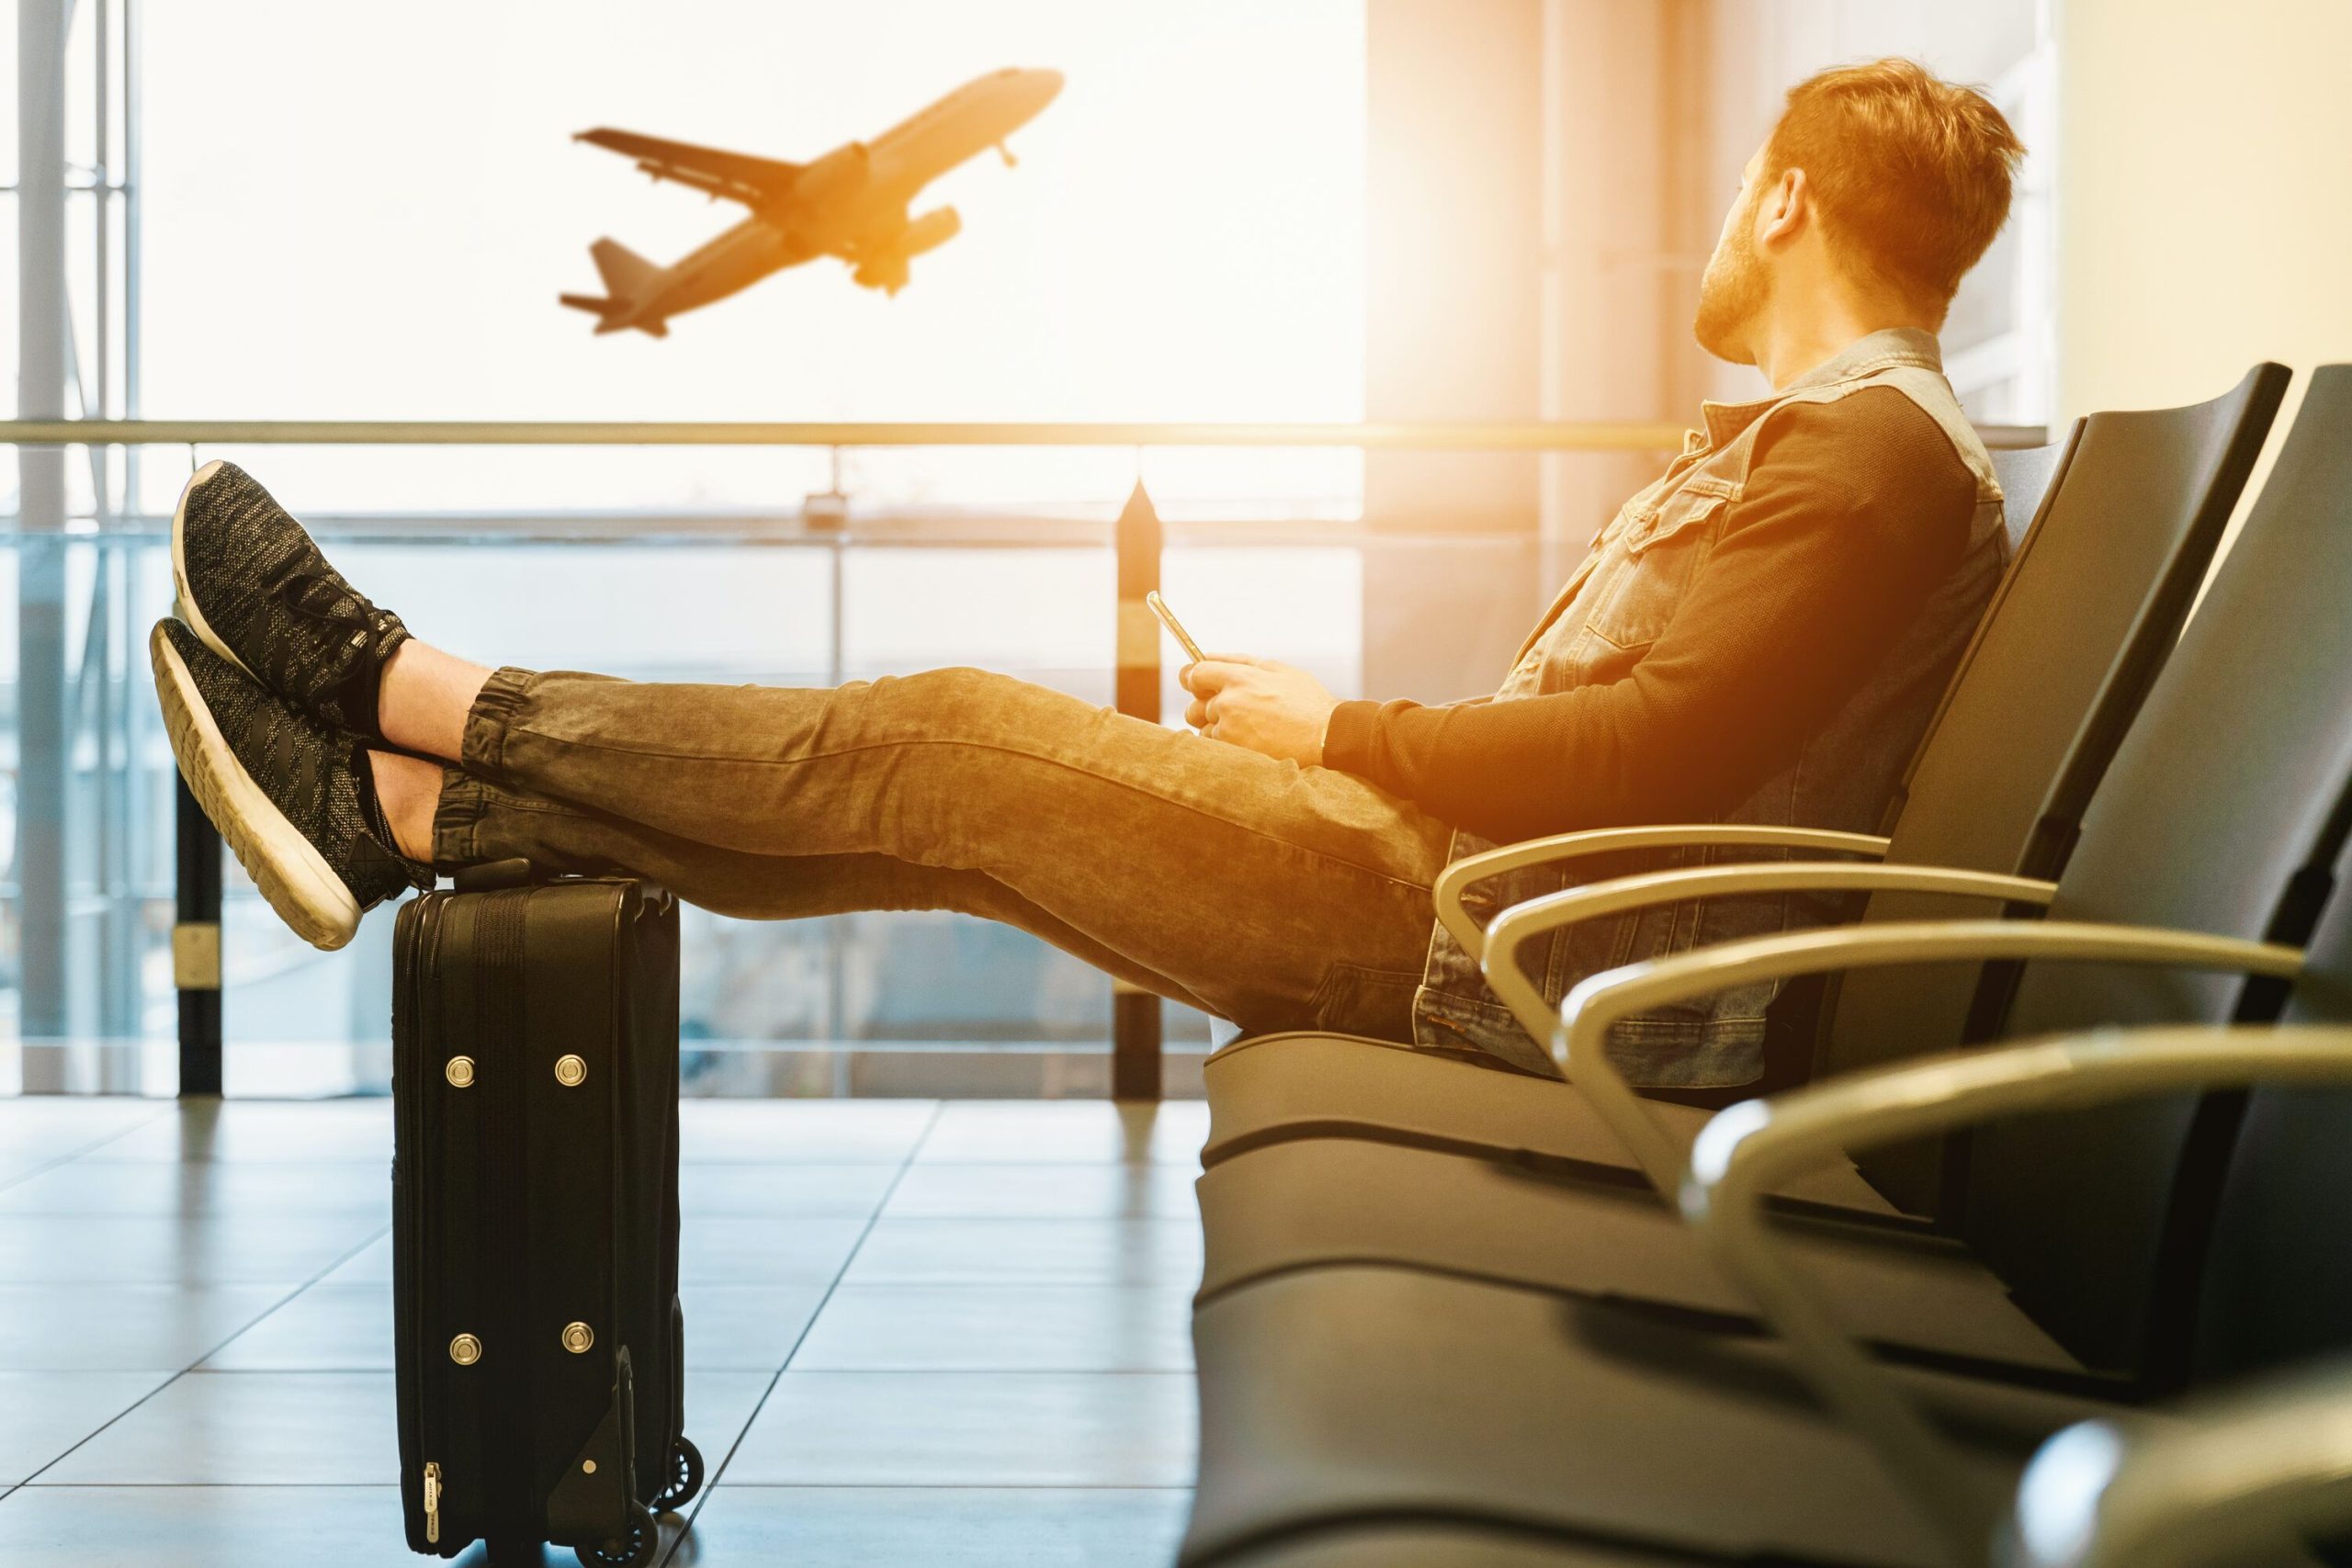 homem olhando no aeroporto avião com os pés sobre mala de viagem